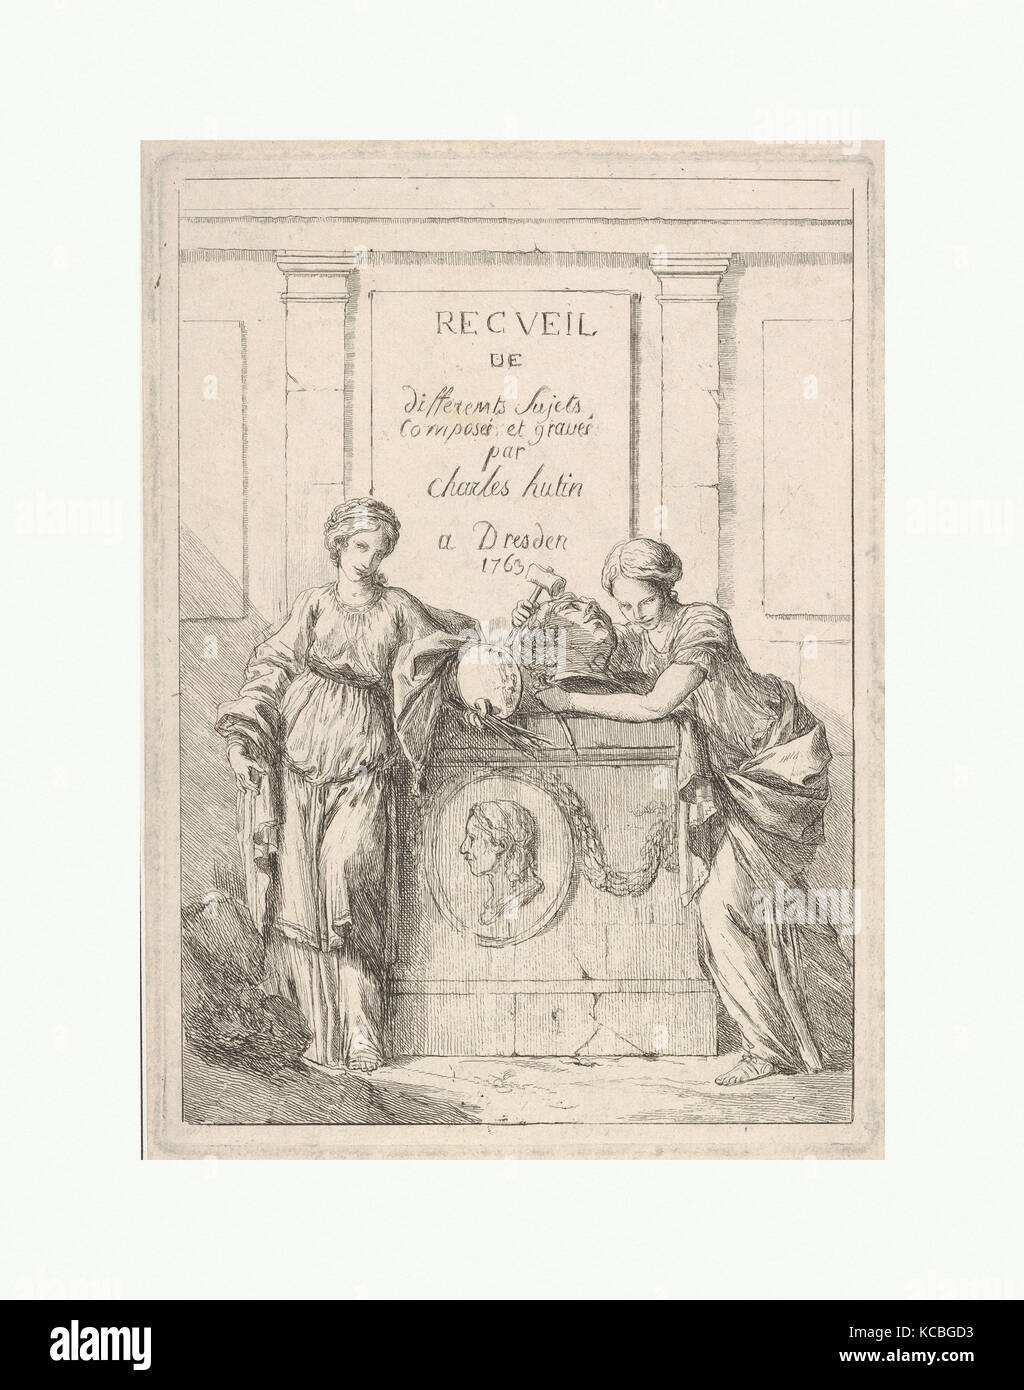 Recueil de Différents Sujets composés et gravés par Charles Hutin à Dresden, Charles Hutin, 1763 Stockfoto